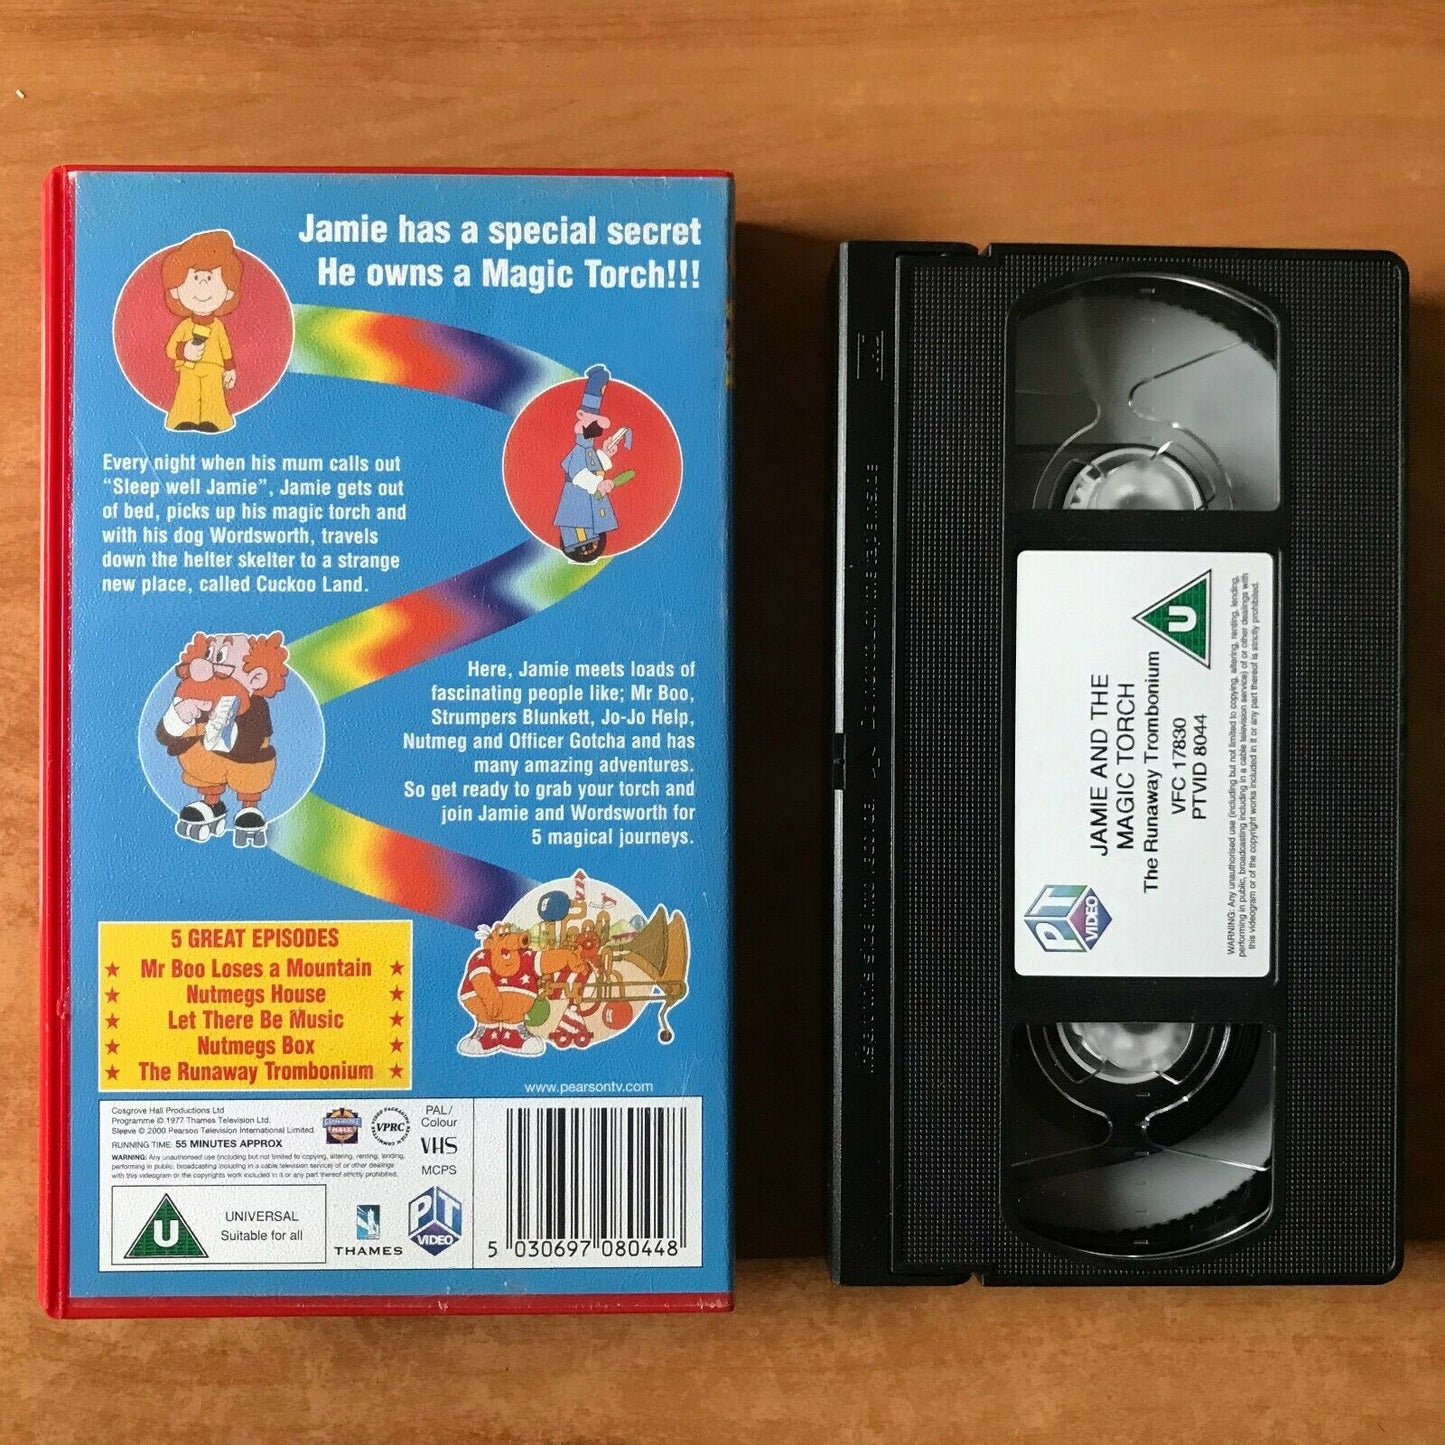 Jamie And The Magic Torch: The Runaway Trombobium - Animated - Children's - VHS-